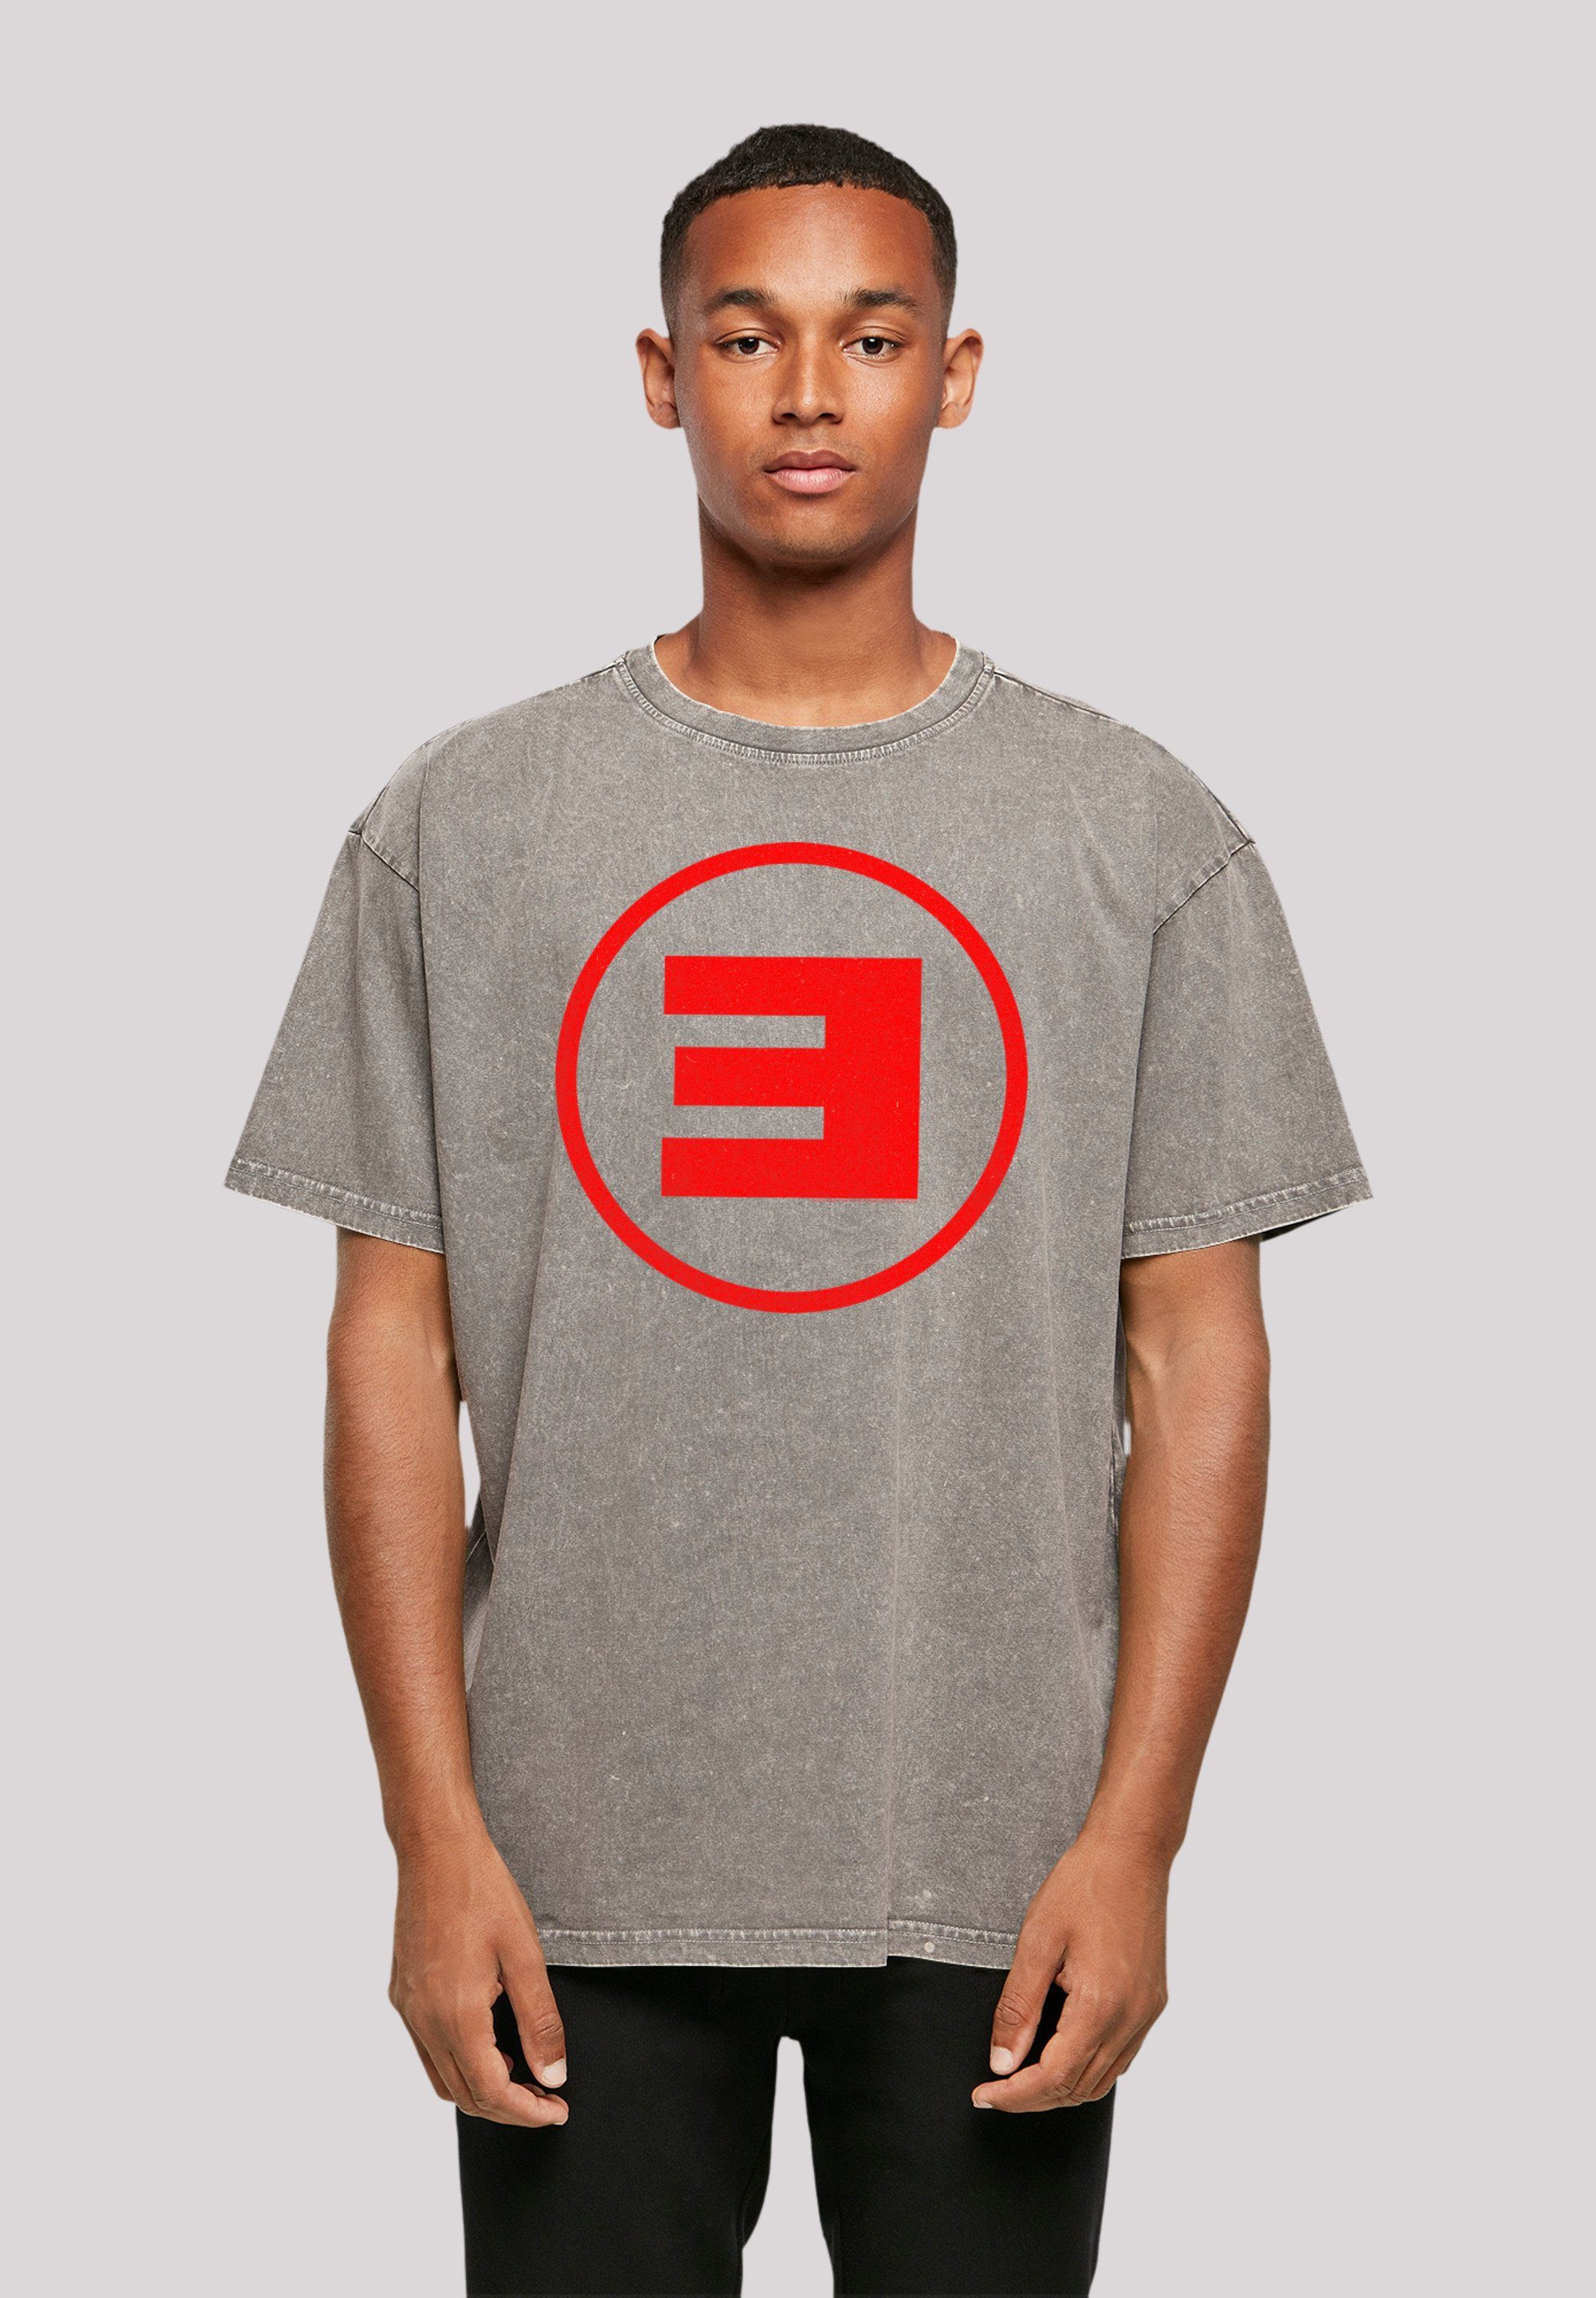 F4NT4STIC T-Shirt Eminem Circle Hip Off Musik, Rock Hop Qualität, Music Premium By E Rap Asphalt